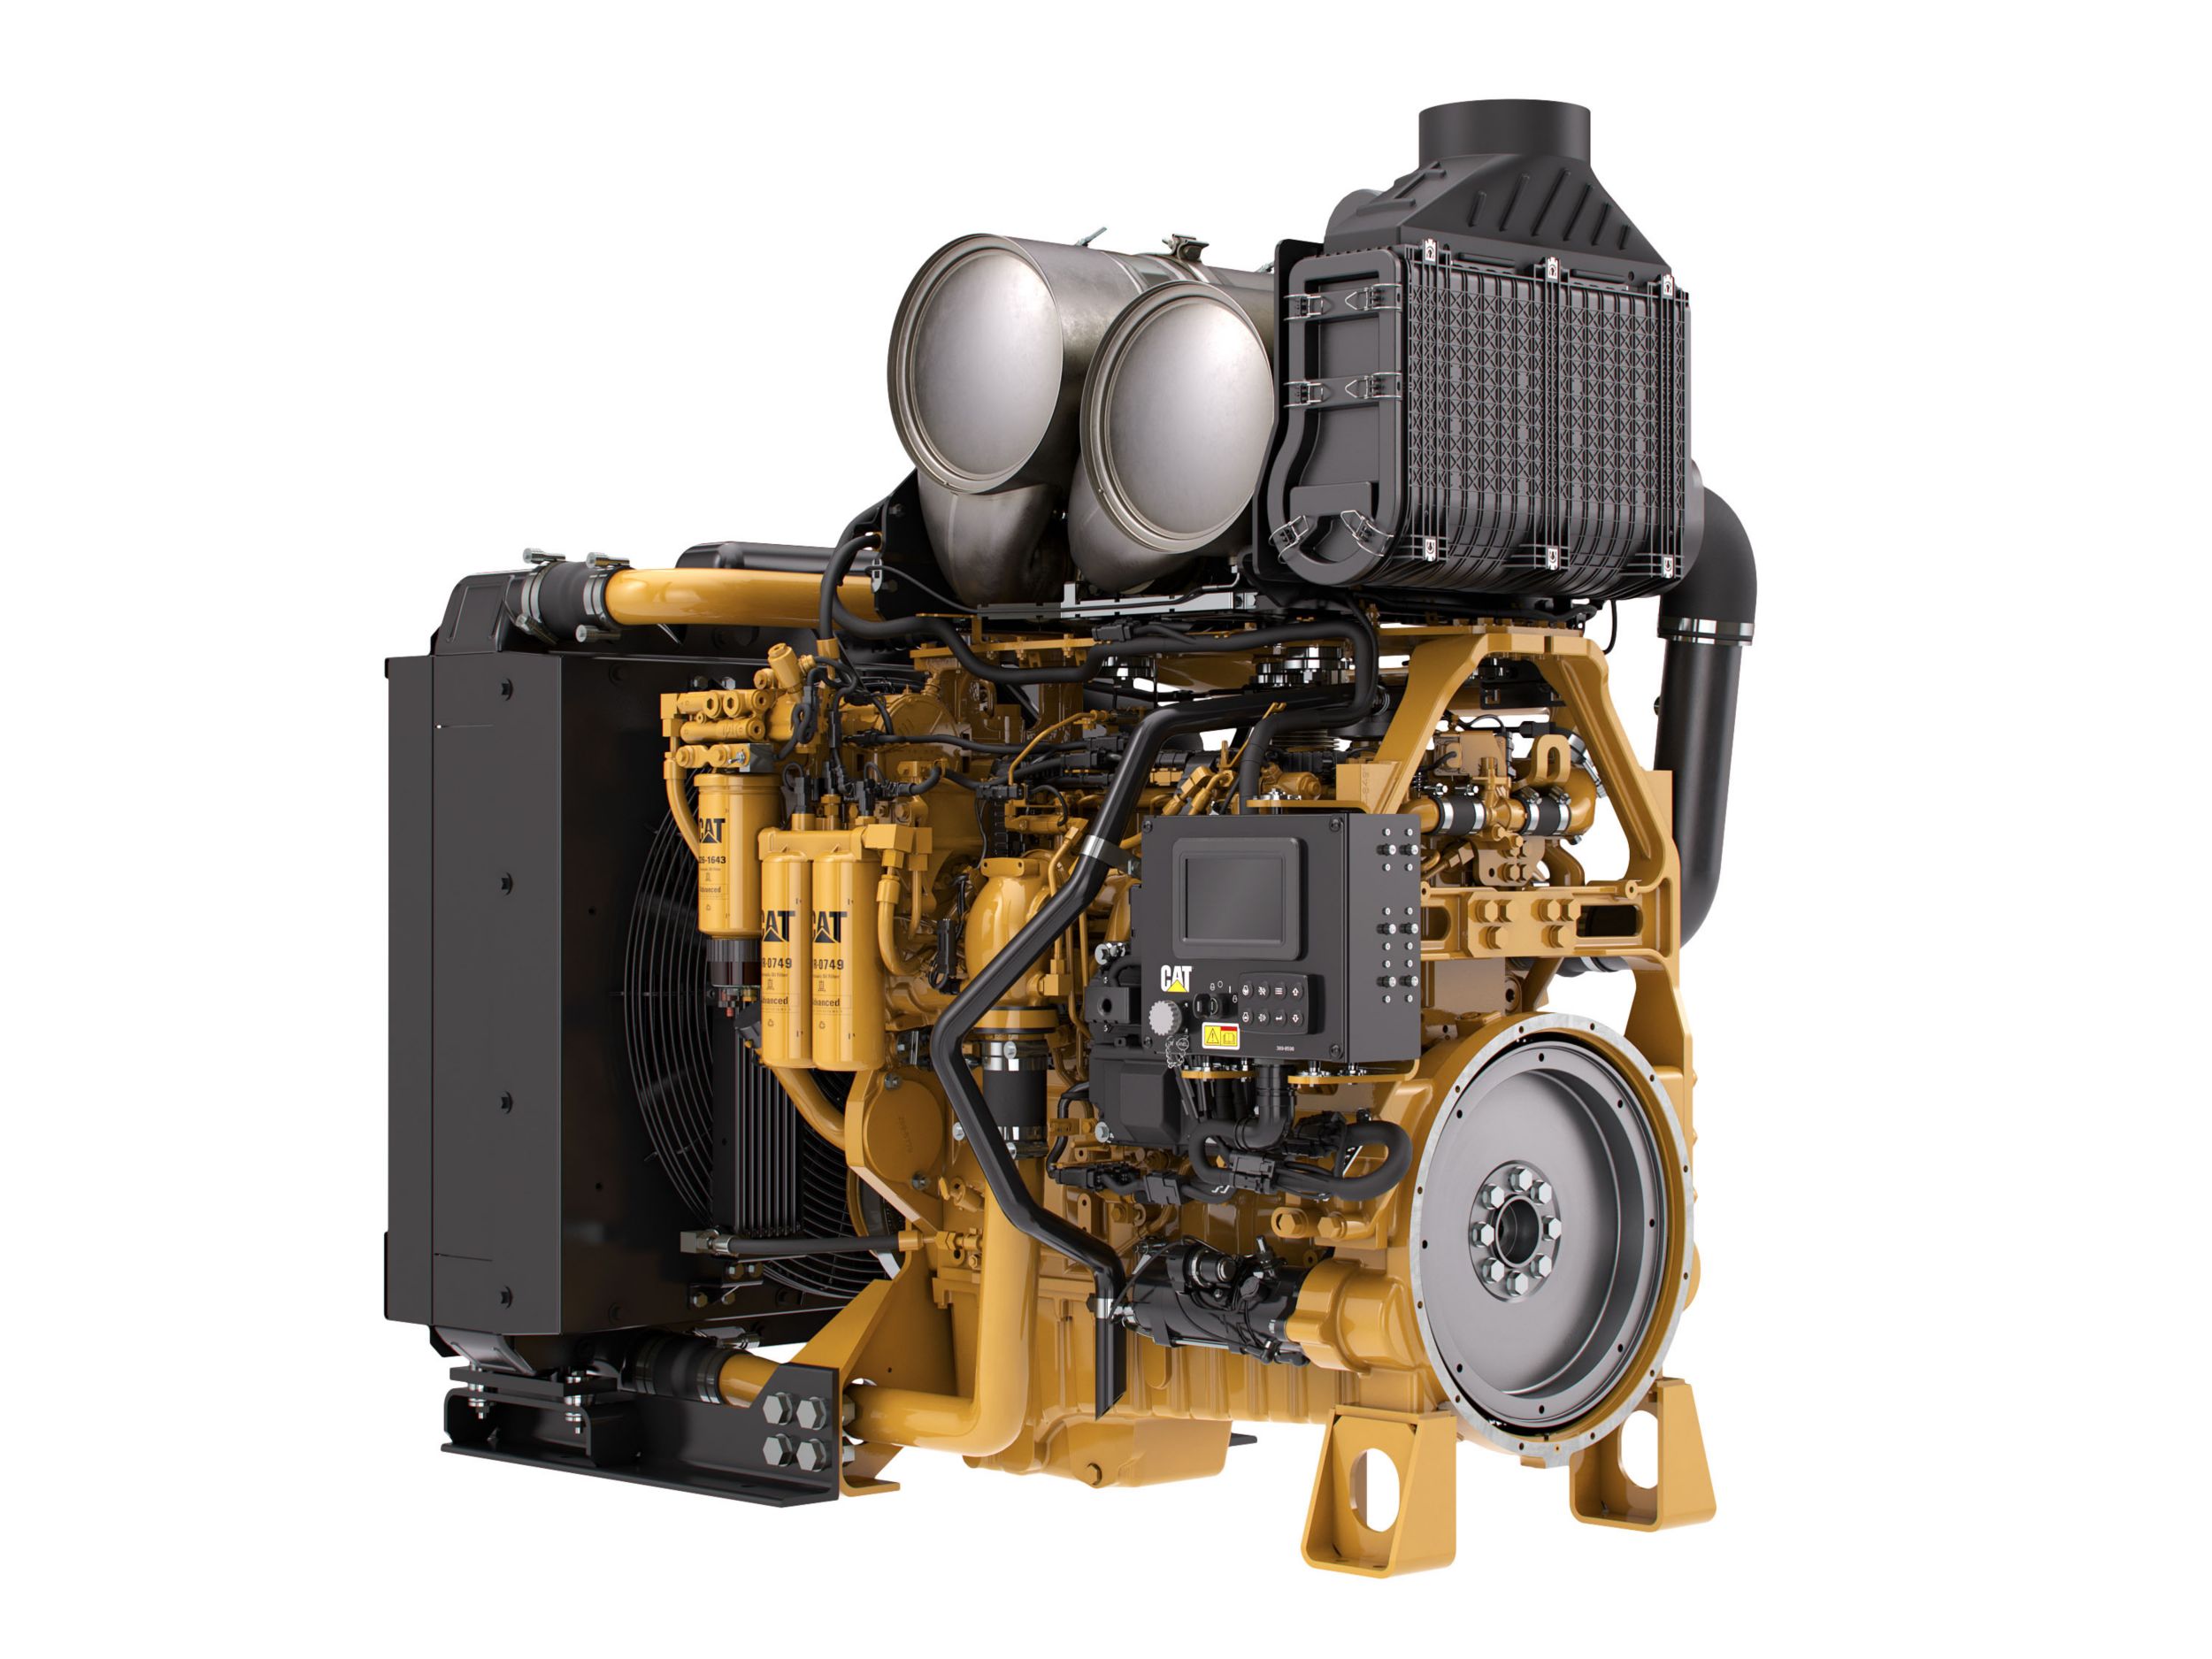 Дизельный двигатель C9.3 ACERT Tier 4 для промышленных силовых установок — для регионов со строгими требованиями